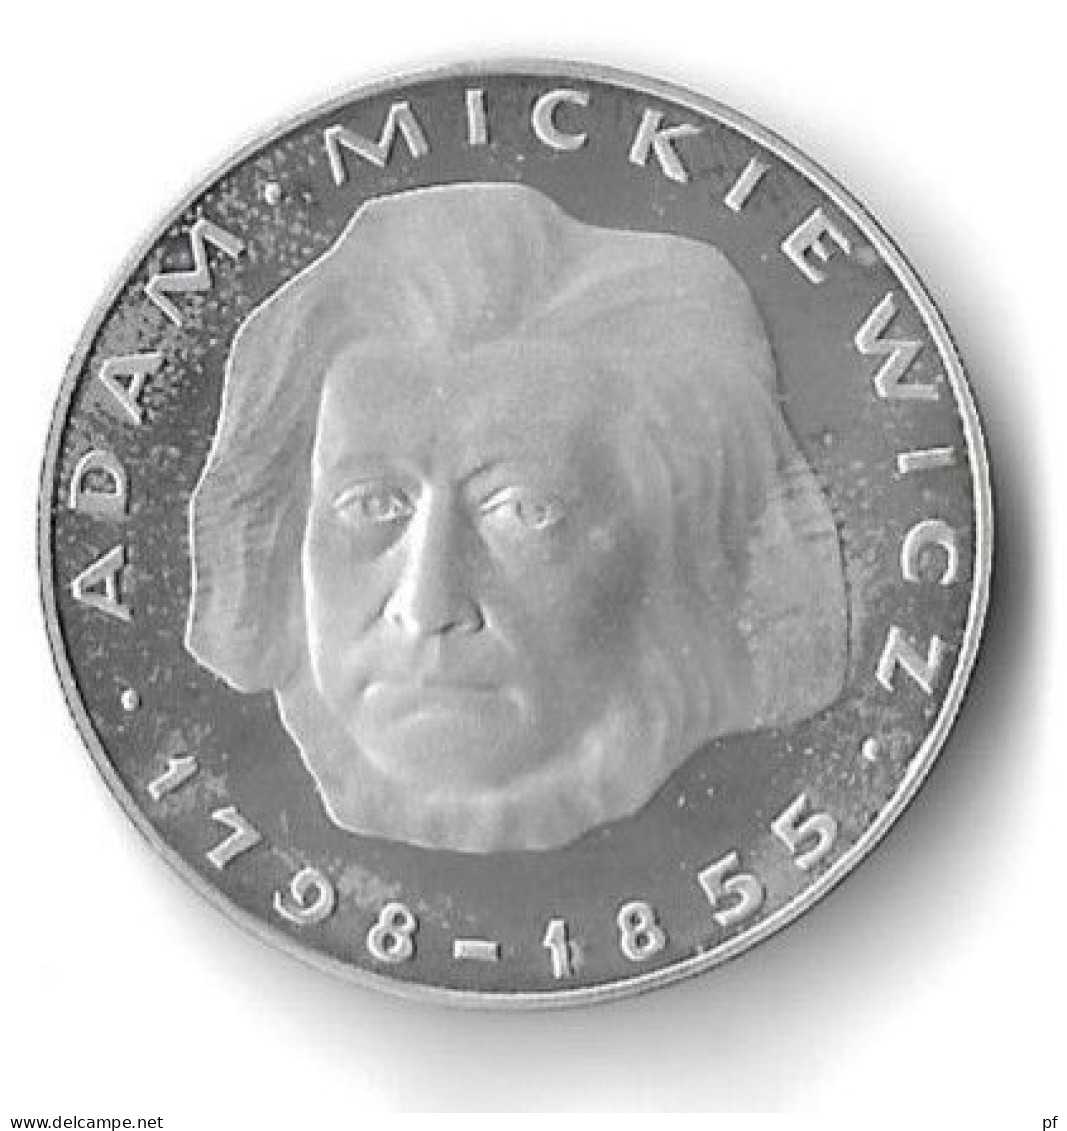 100 Zl  1978 (Ag)  Adam Mickiewicz 1798-1855 - Poland